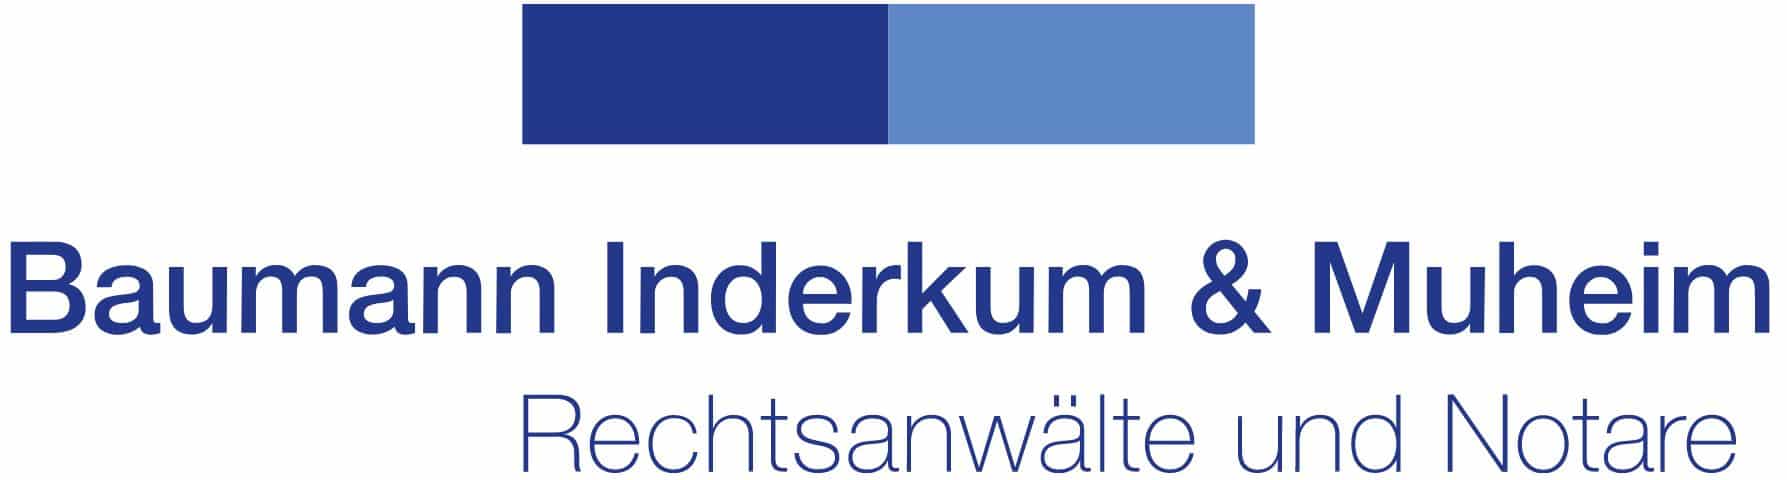 Logo Baumann Inderkum & Muheim Rechtsanwälte und Notare